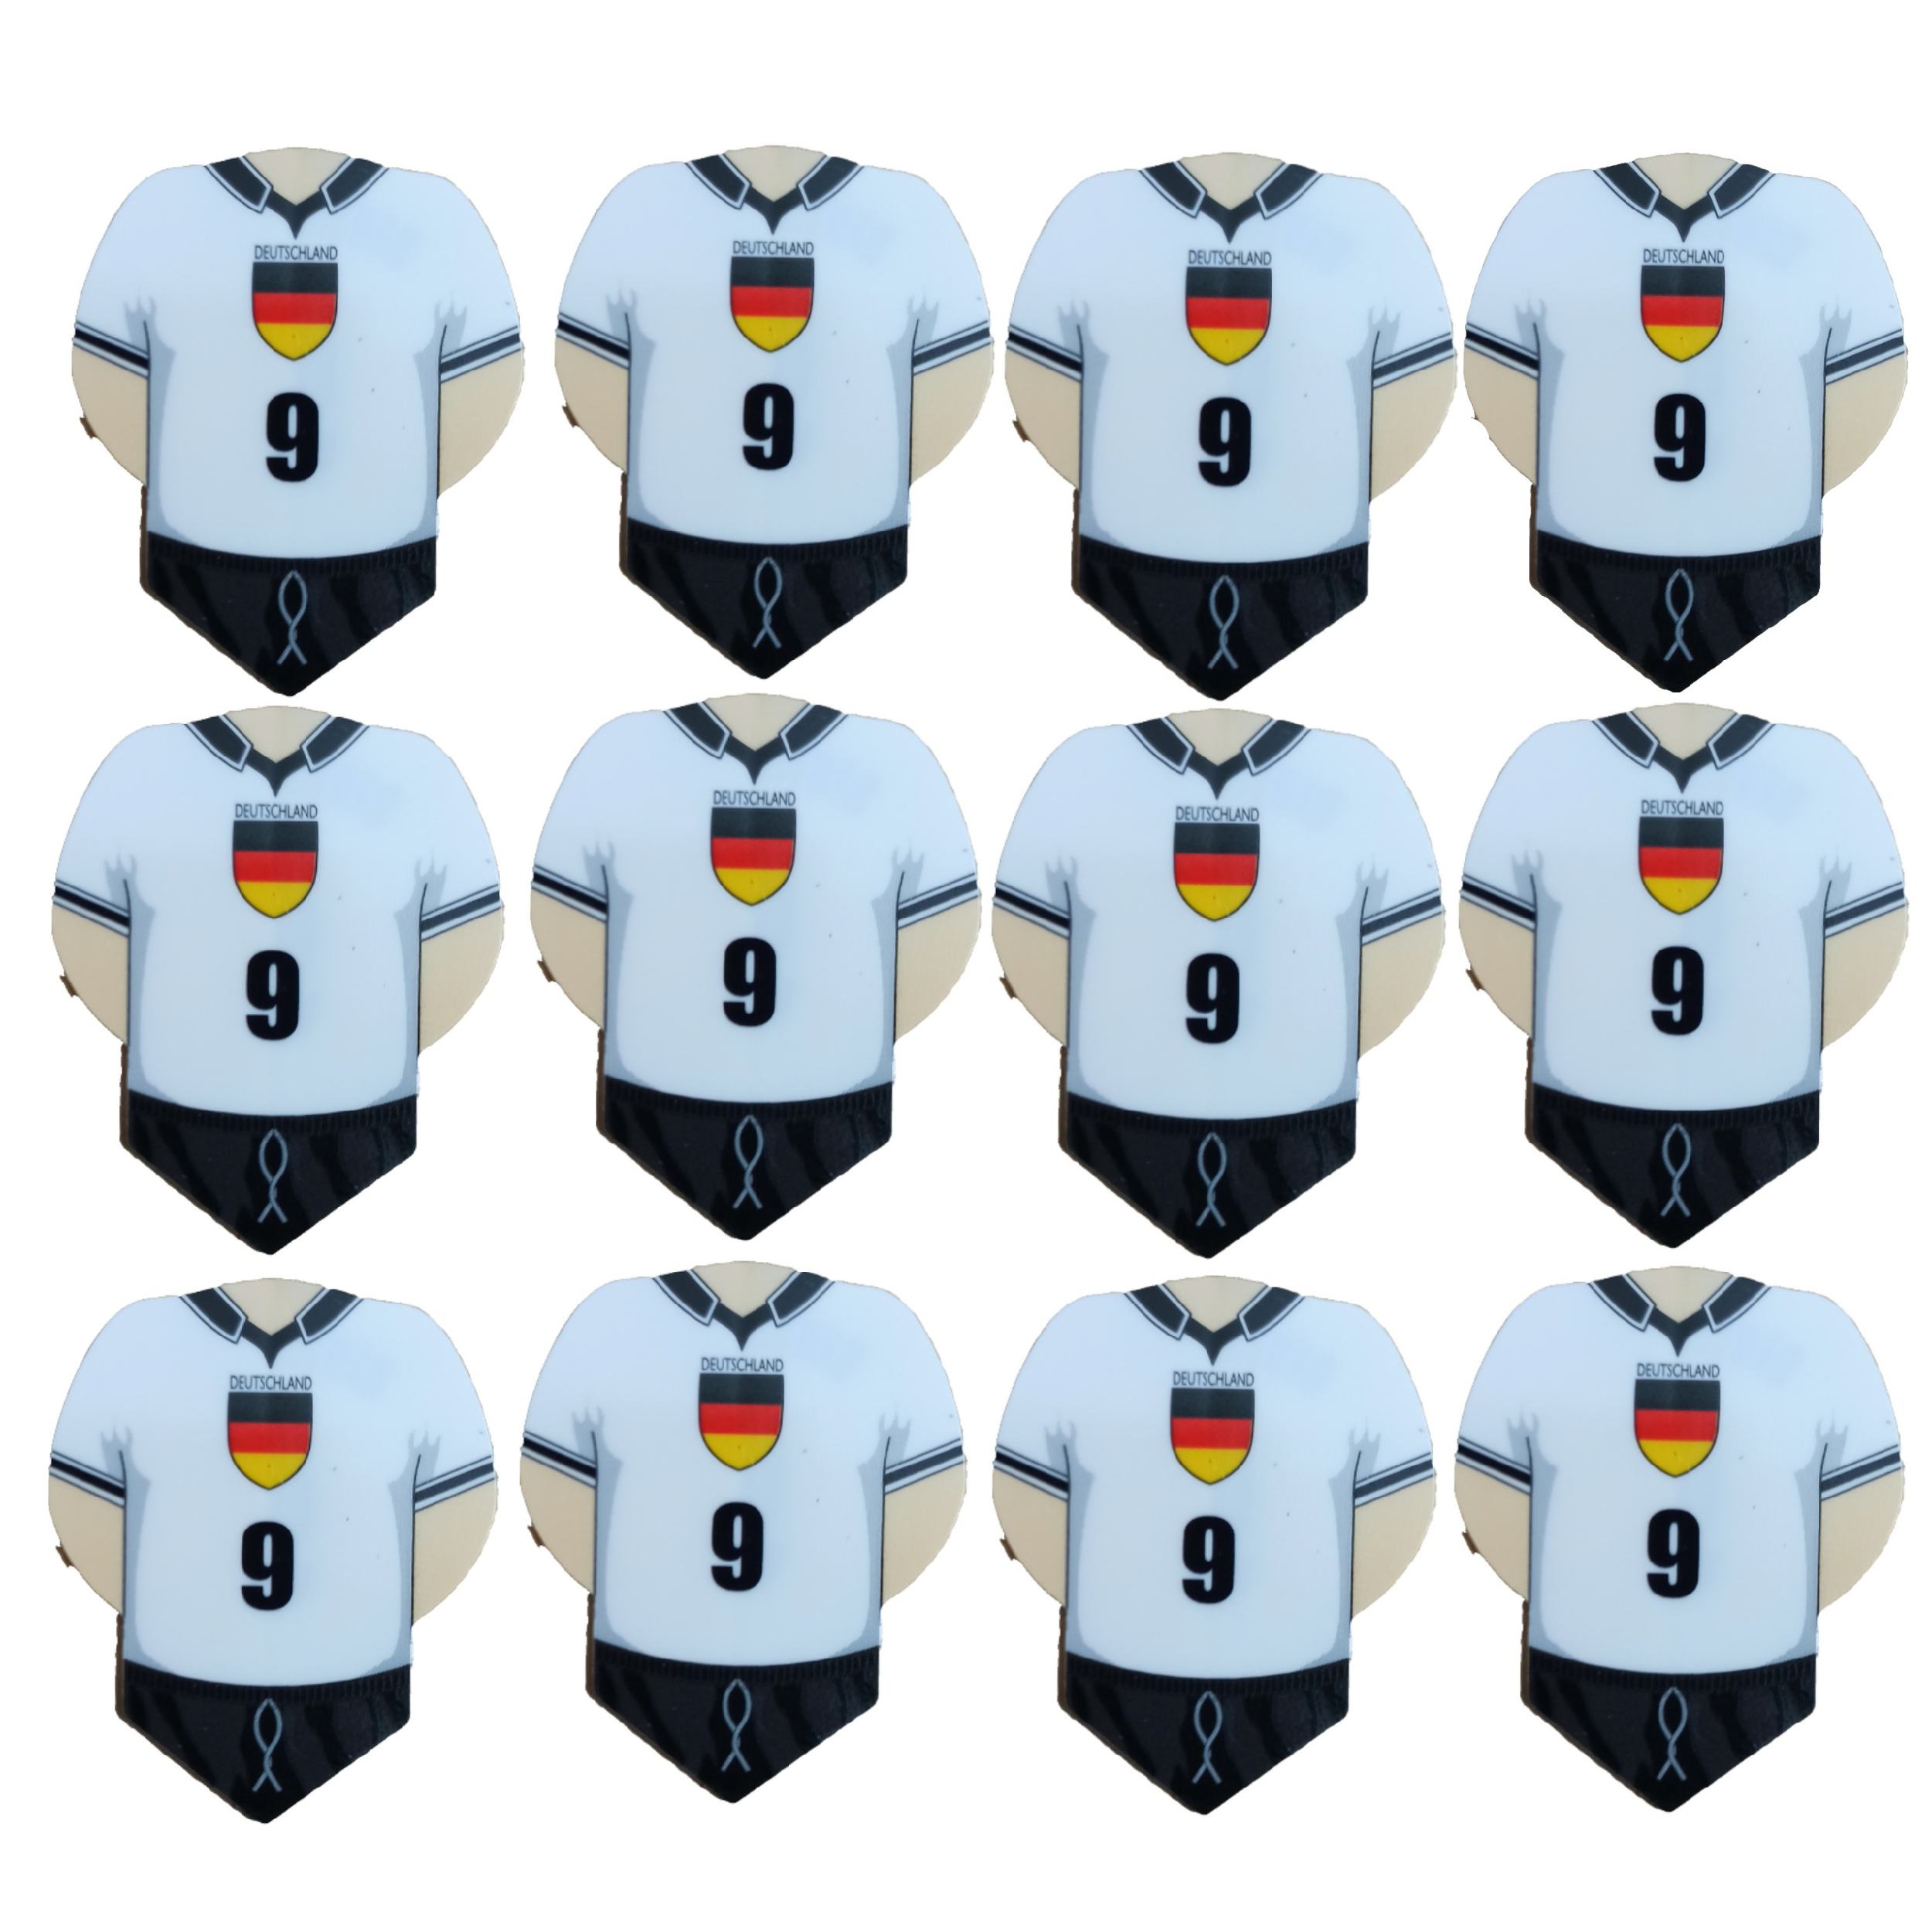 پر یدک دارت طرح لباس تیم آلمان کد 1 بسته 12 عددی